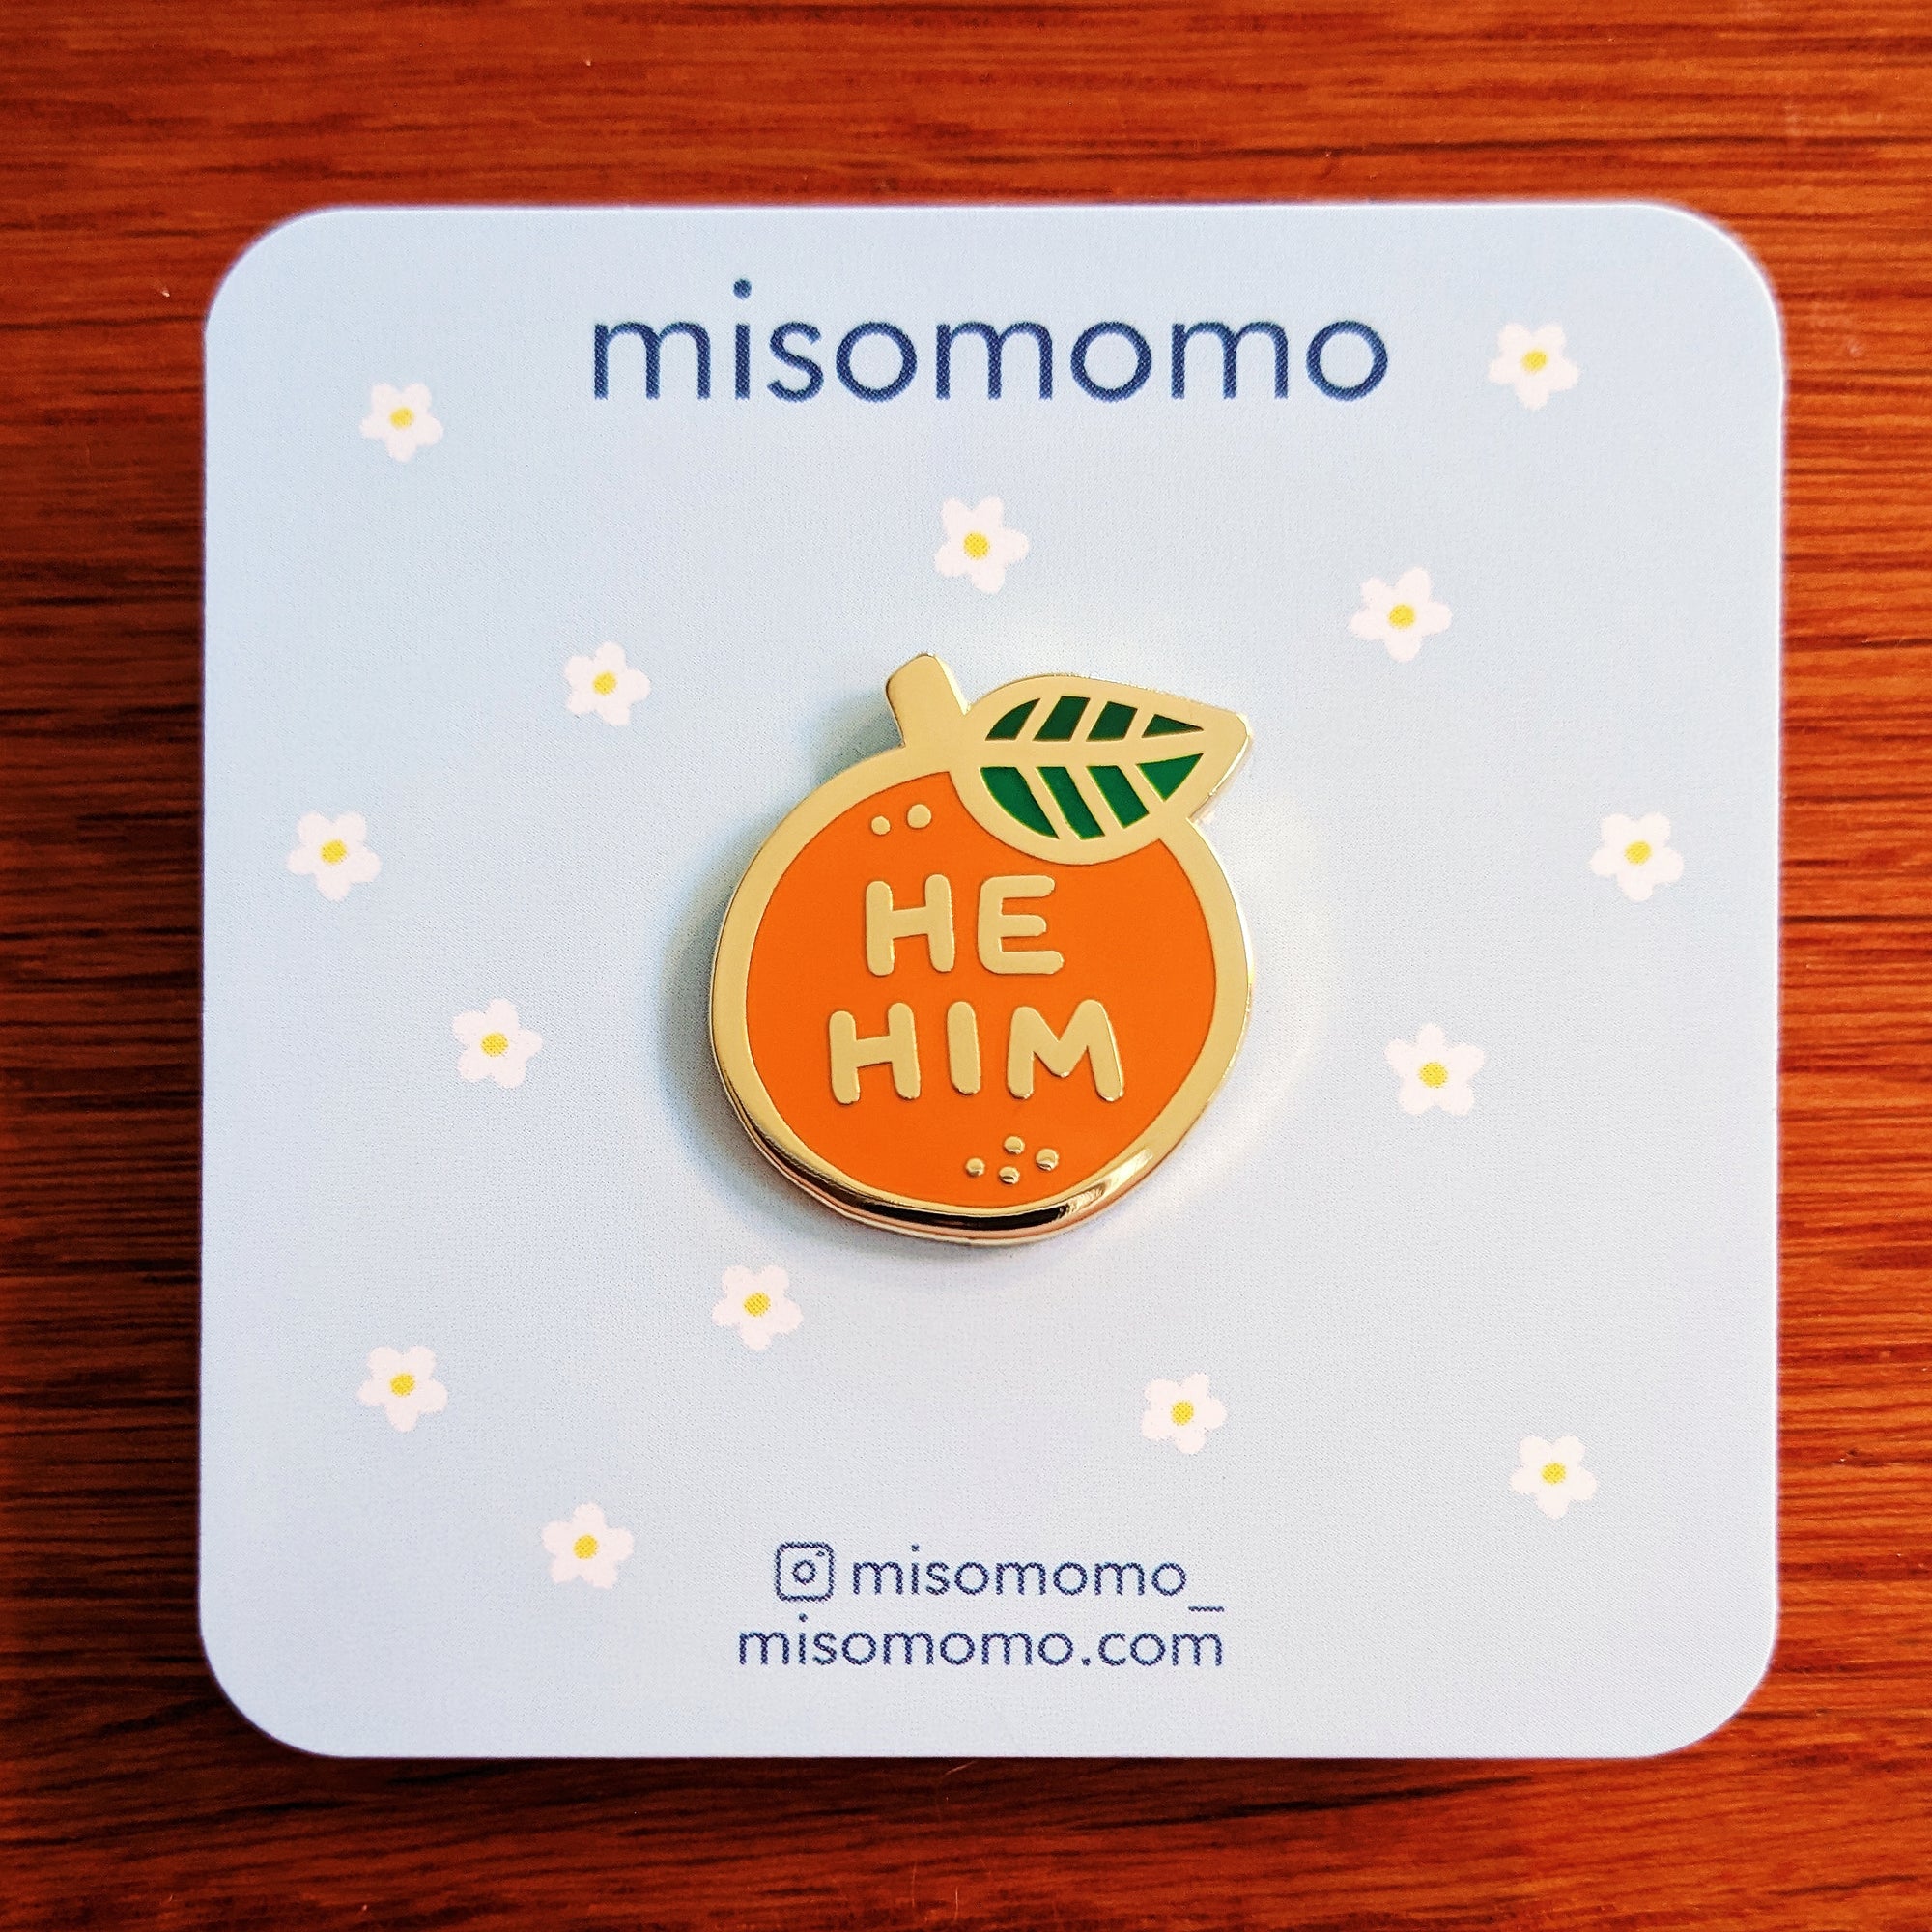 Pronoun Orange Pin - he/him